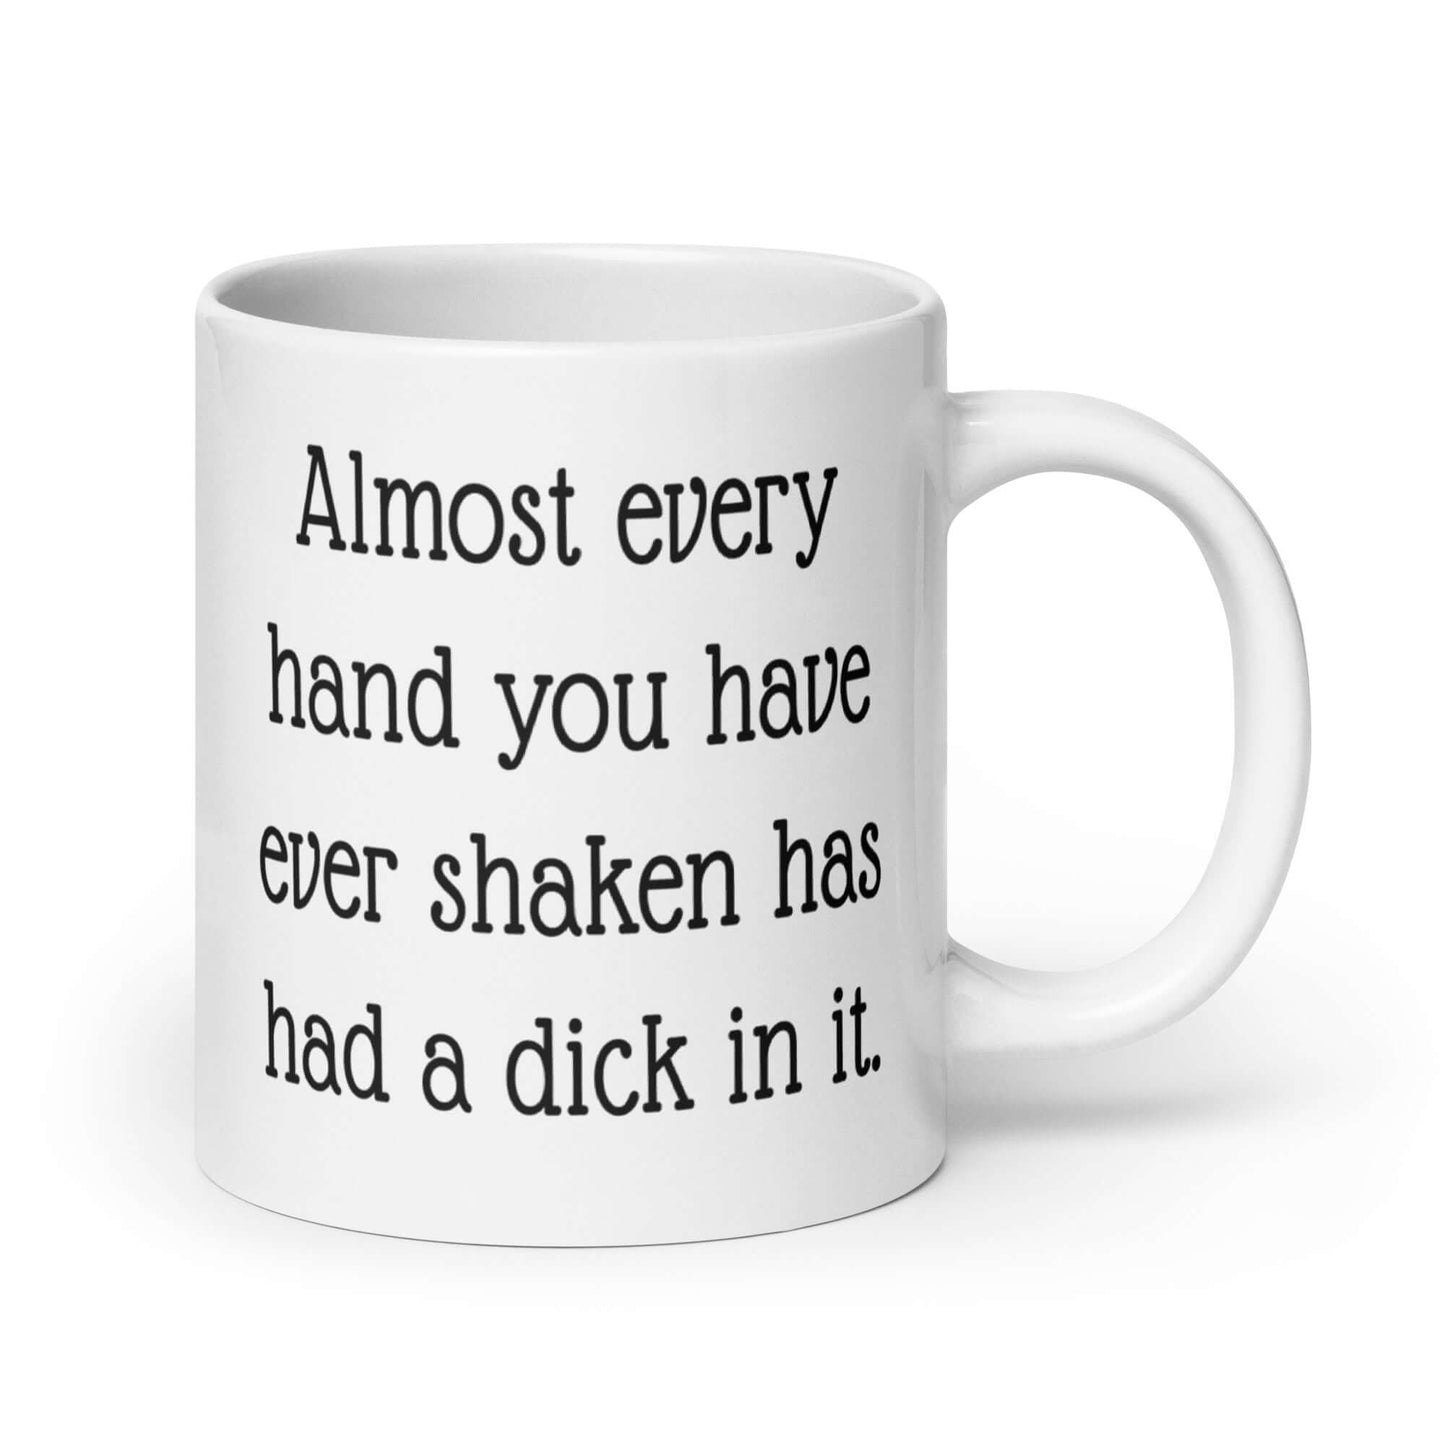 Funny dick handshake mug